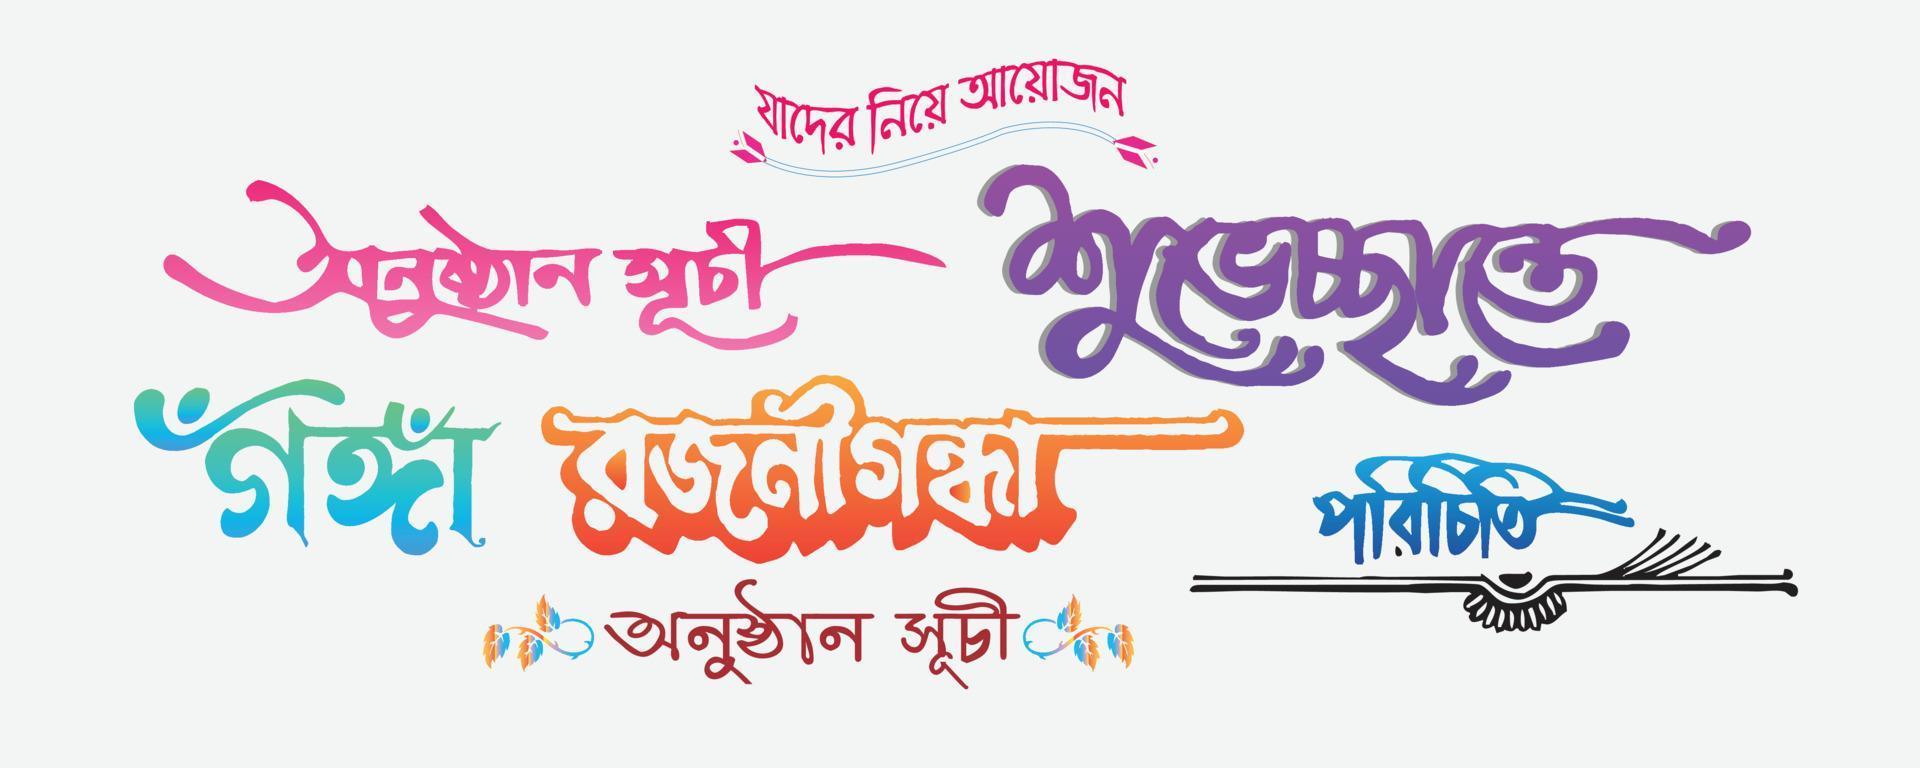 herzlichen glückwunsch zum bengalischen text ovinondon bangla typografie. bunte bengalische typografie. Kostenlose handschriftliche Schriftart. vektor